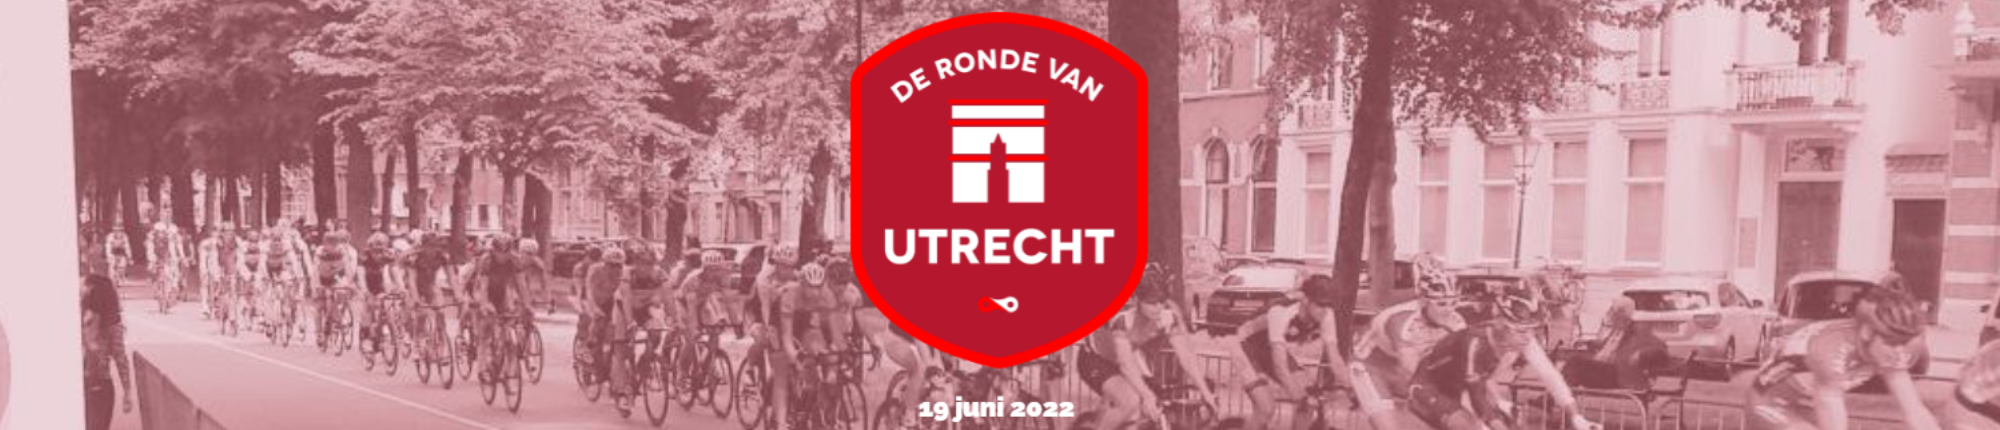 !!! LOCATIE GEWIJZIGD/CHANGED LOCATION !!!: Wielrennen / Road Cycling - Ronde van Utrecht